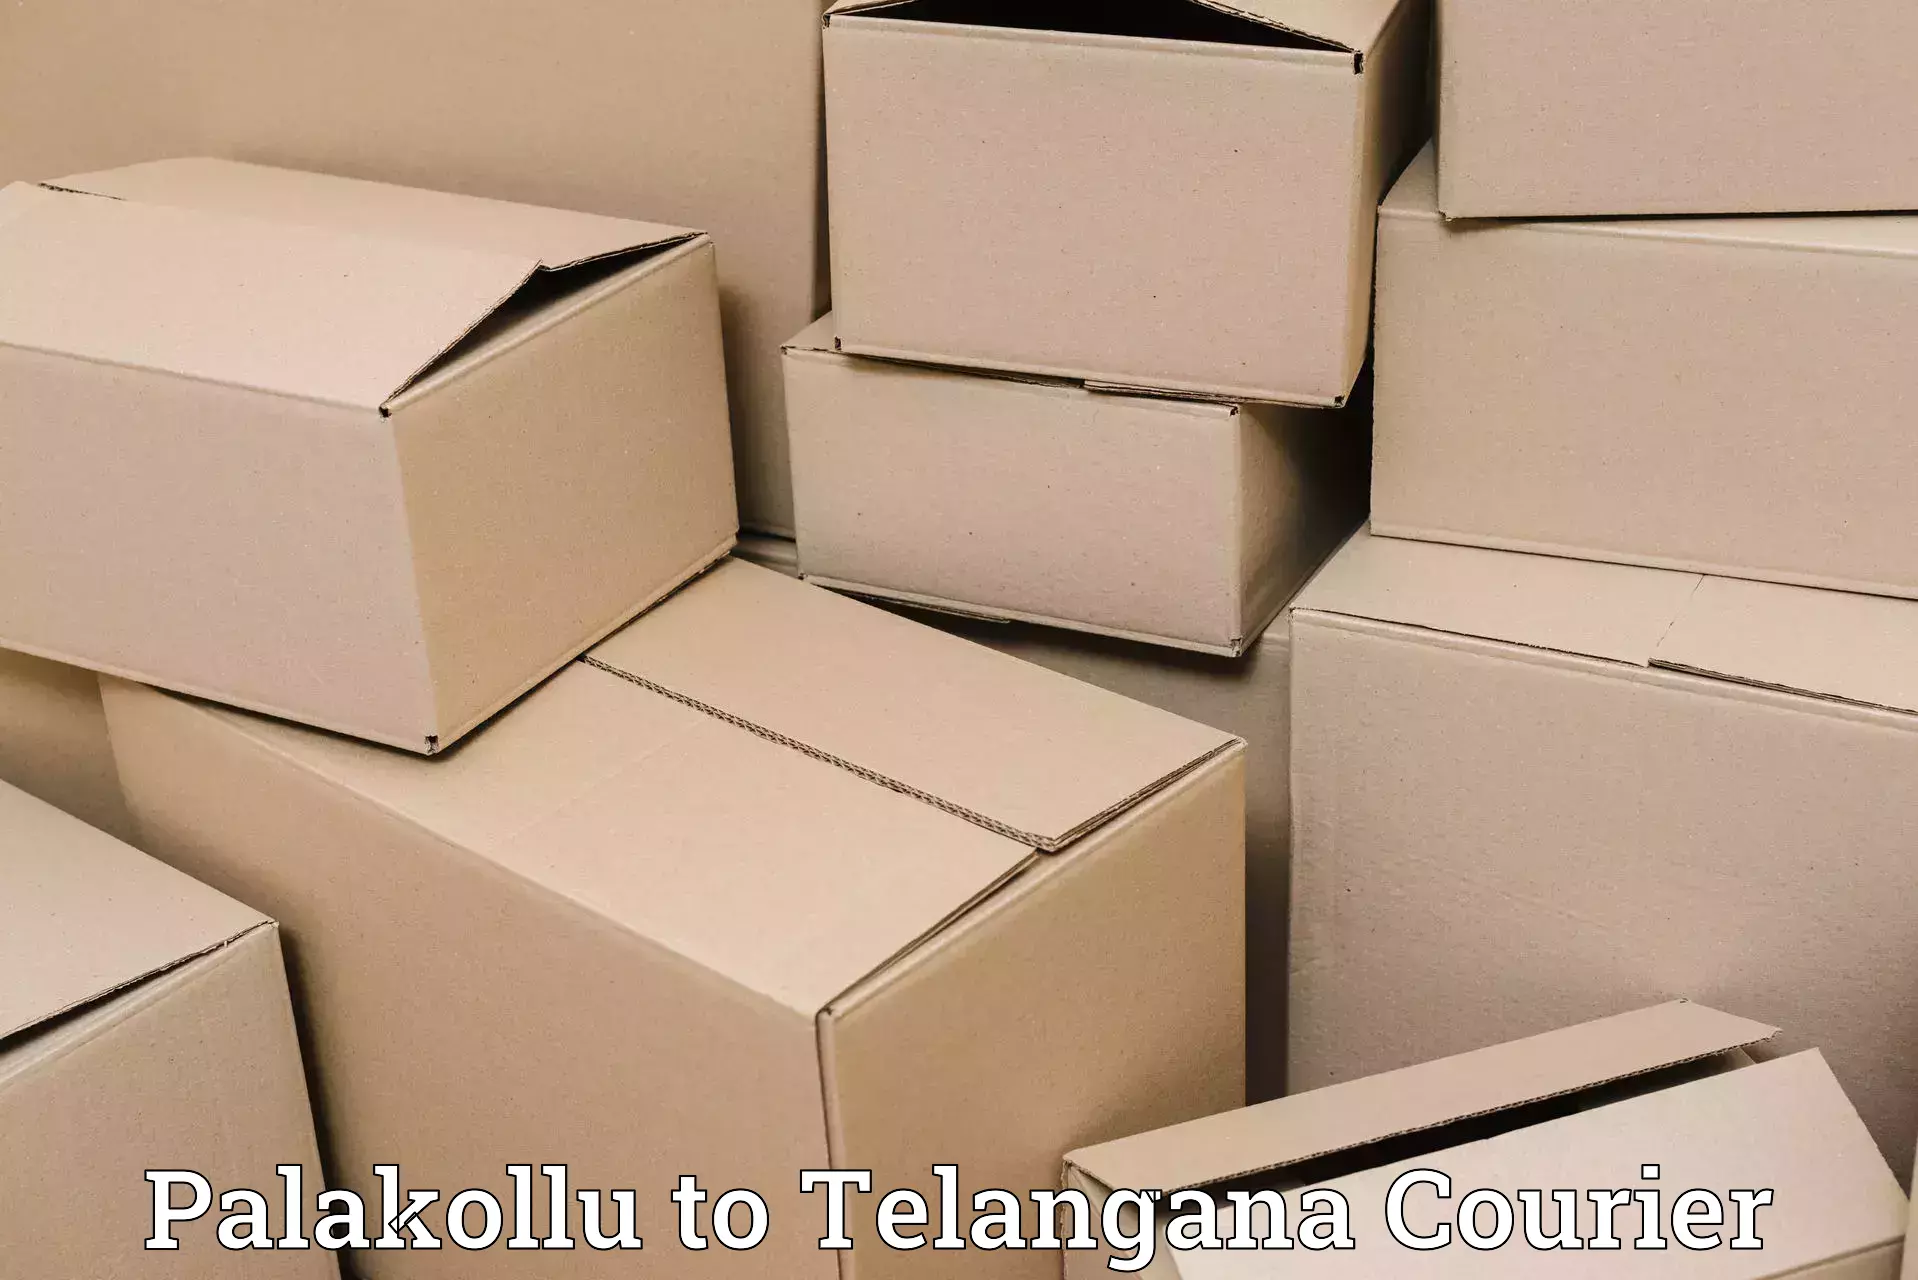 Expedited shipping solutions Palakollu to Nakerakal